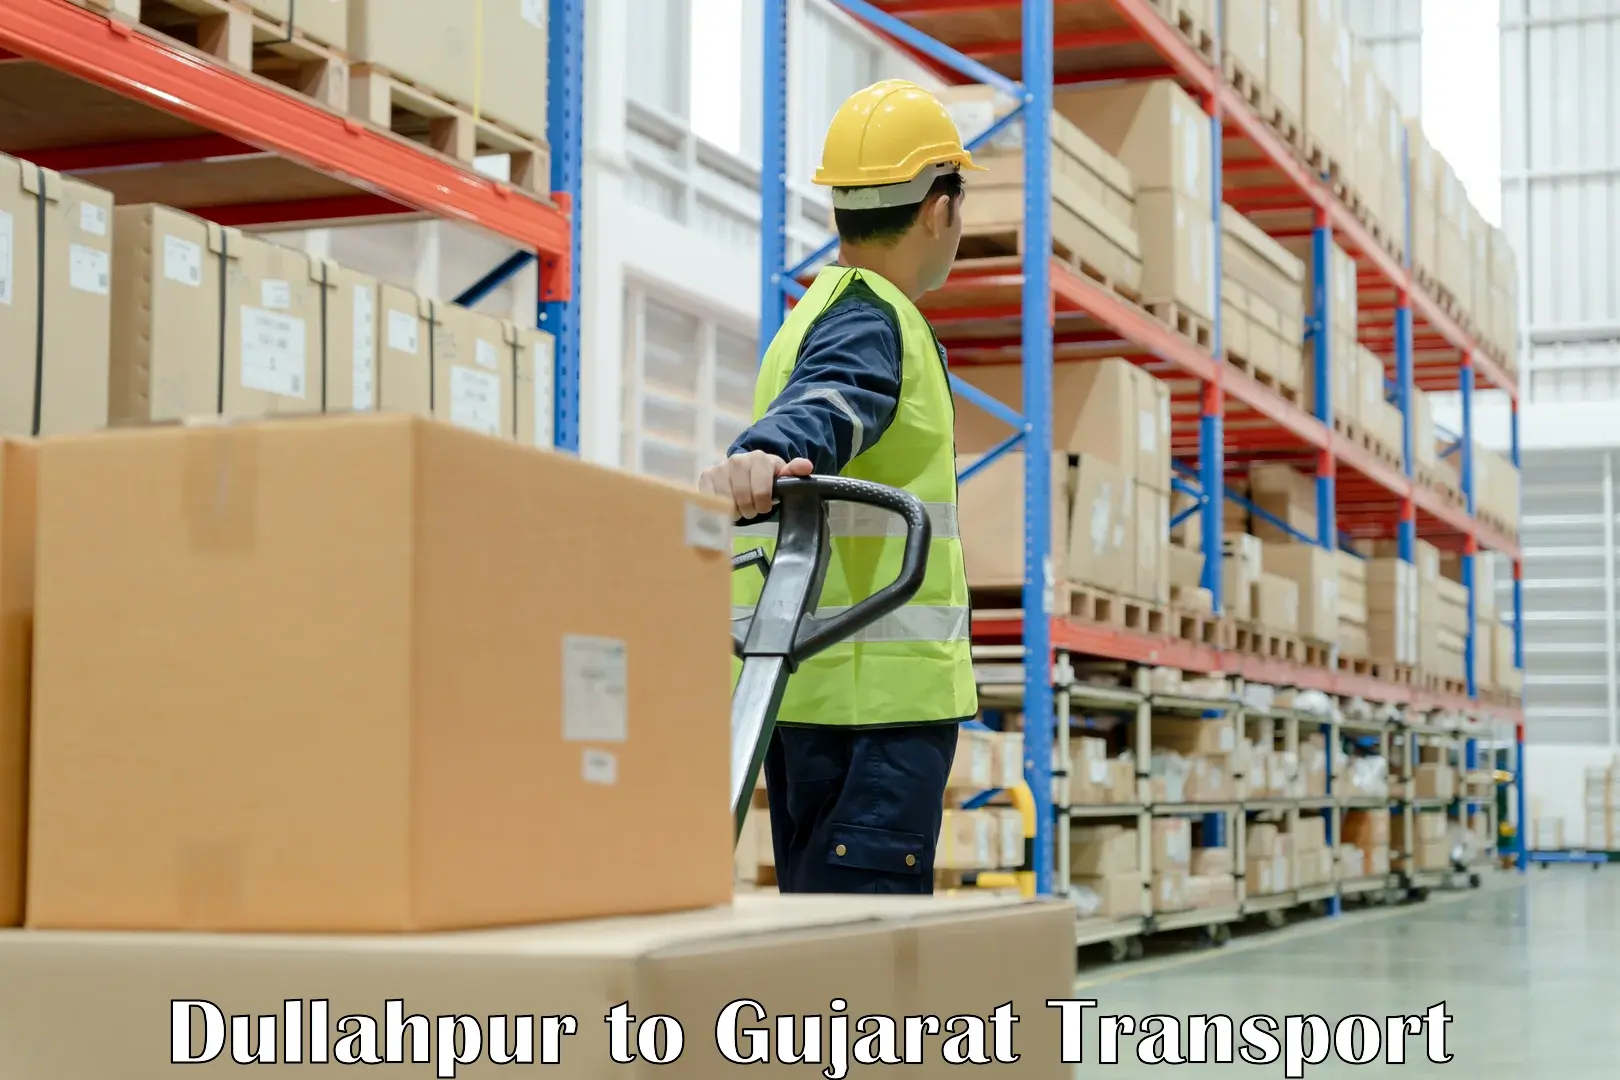 Furniture transport service in Dullahpur to Patan Gujarat